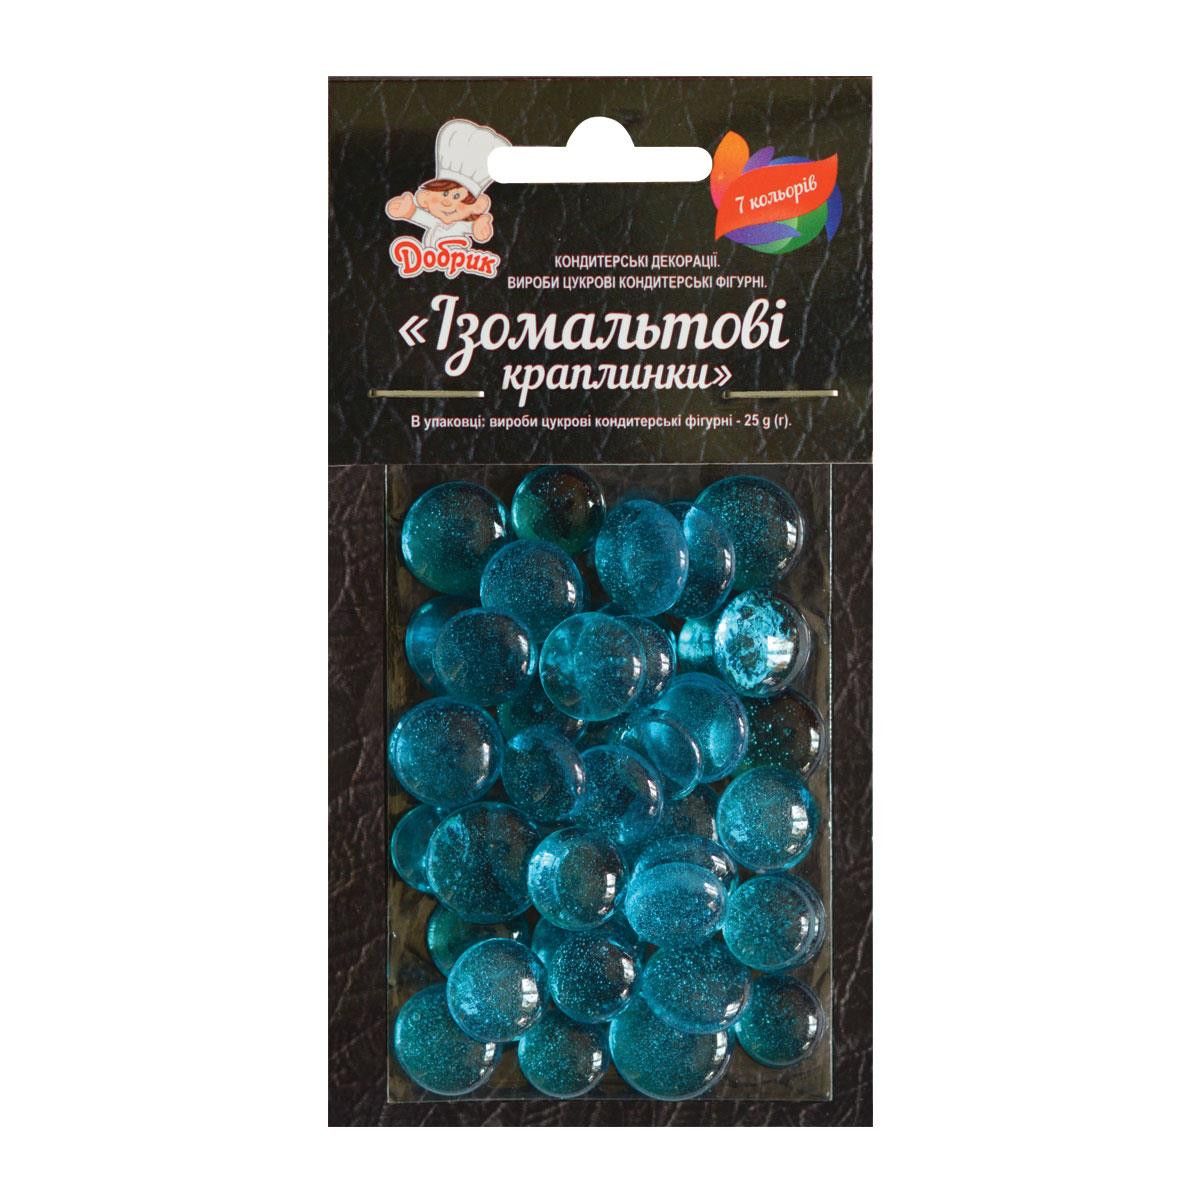 ⋗ Ізомальтові краплинки блакитні купити в Україні ➛ CakeShop.com.ua, фото